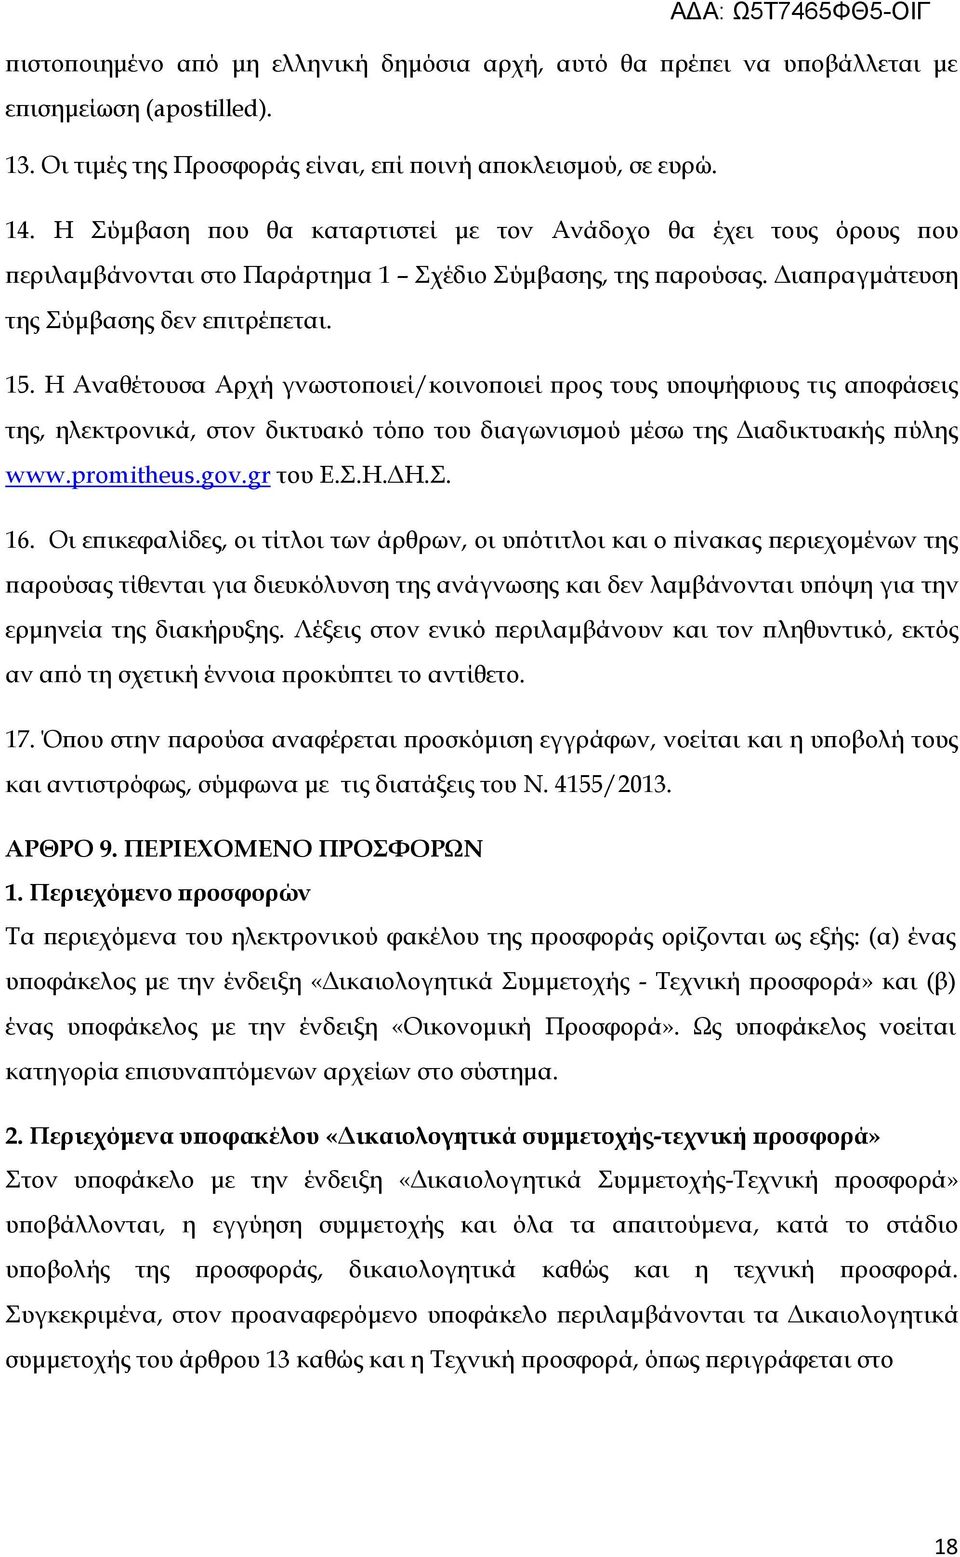 Η Αναθέτουσα Αρχή γνωστοποιεί/κοινοποιεί προς τους υποψήφιους τις αποφάσεις της, ηλεκτρονικά, στον δικτυακό τόπο του διαγωνισμού μέσω της Διαδικτυακής πύλης www.promitheus.gov.gr του Ε.Σ.Η.ΔΗ.Σ. 16.